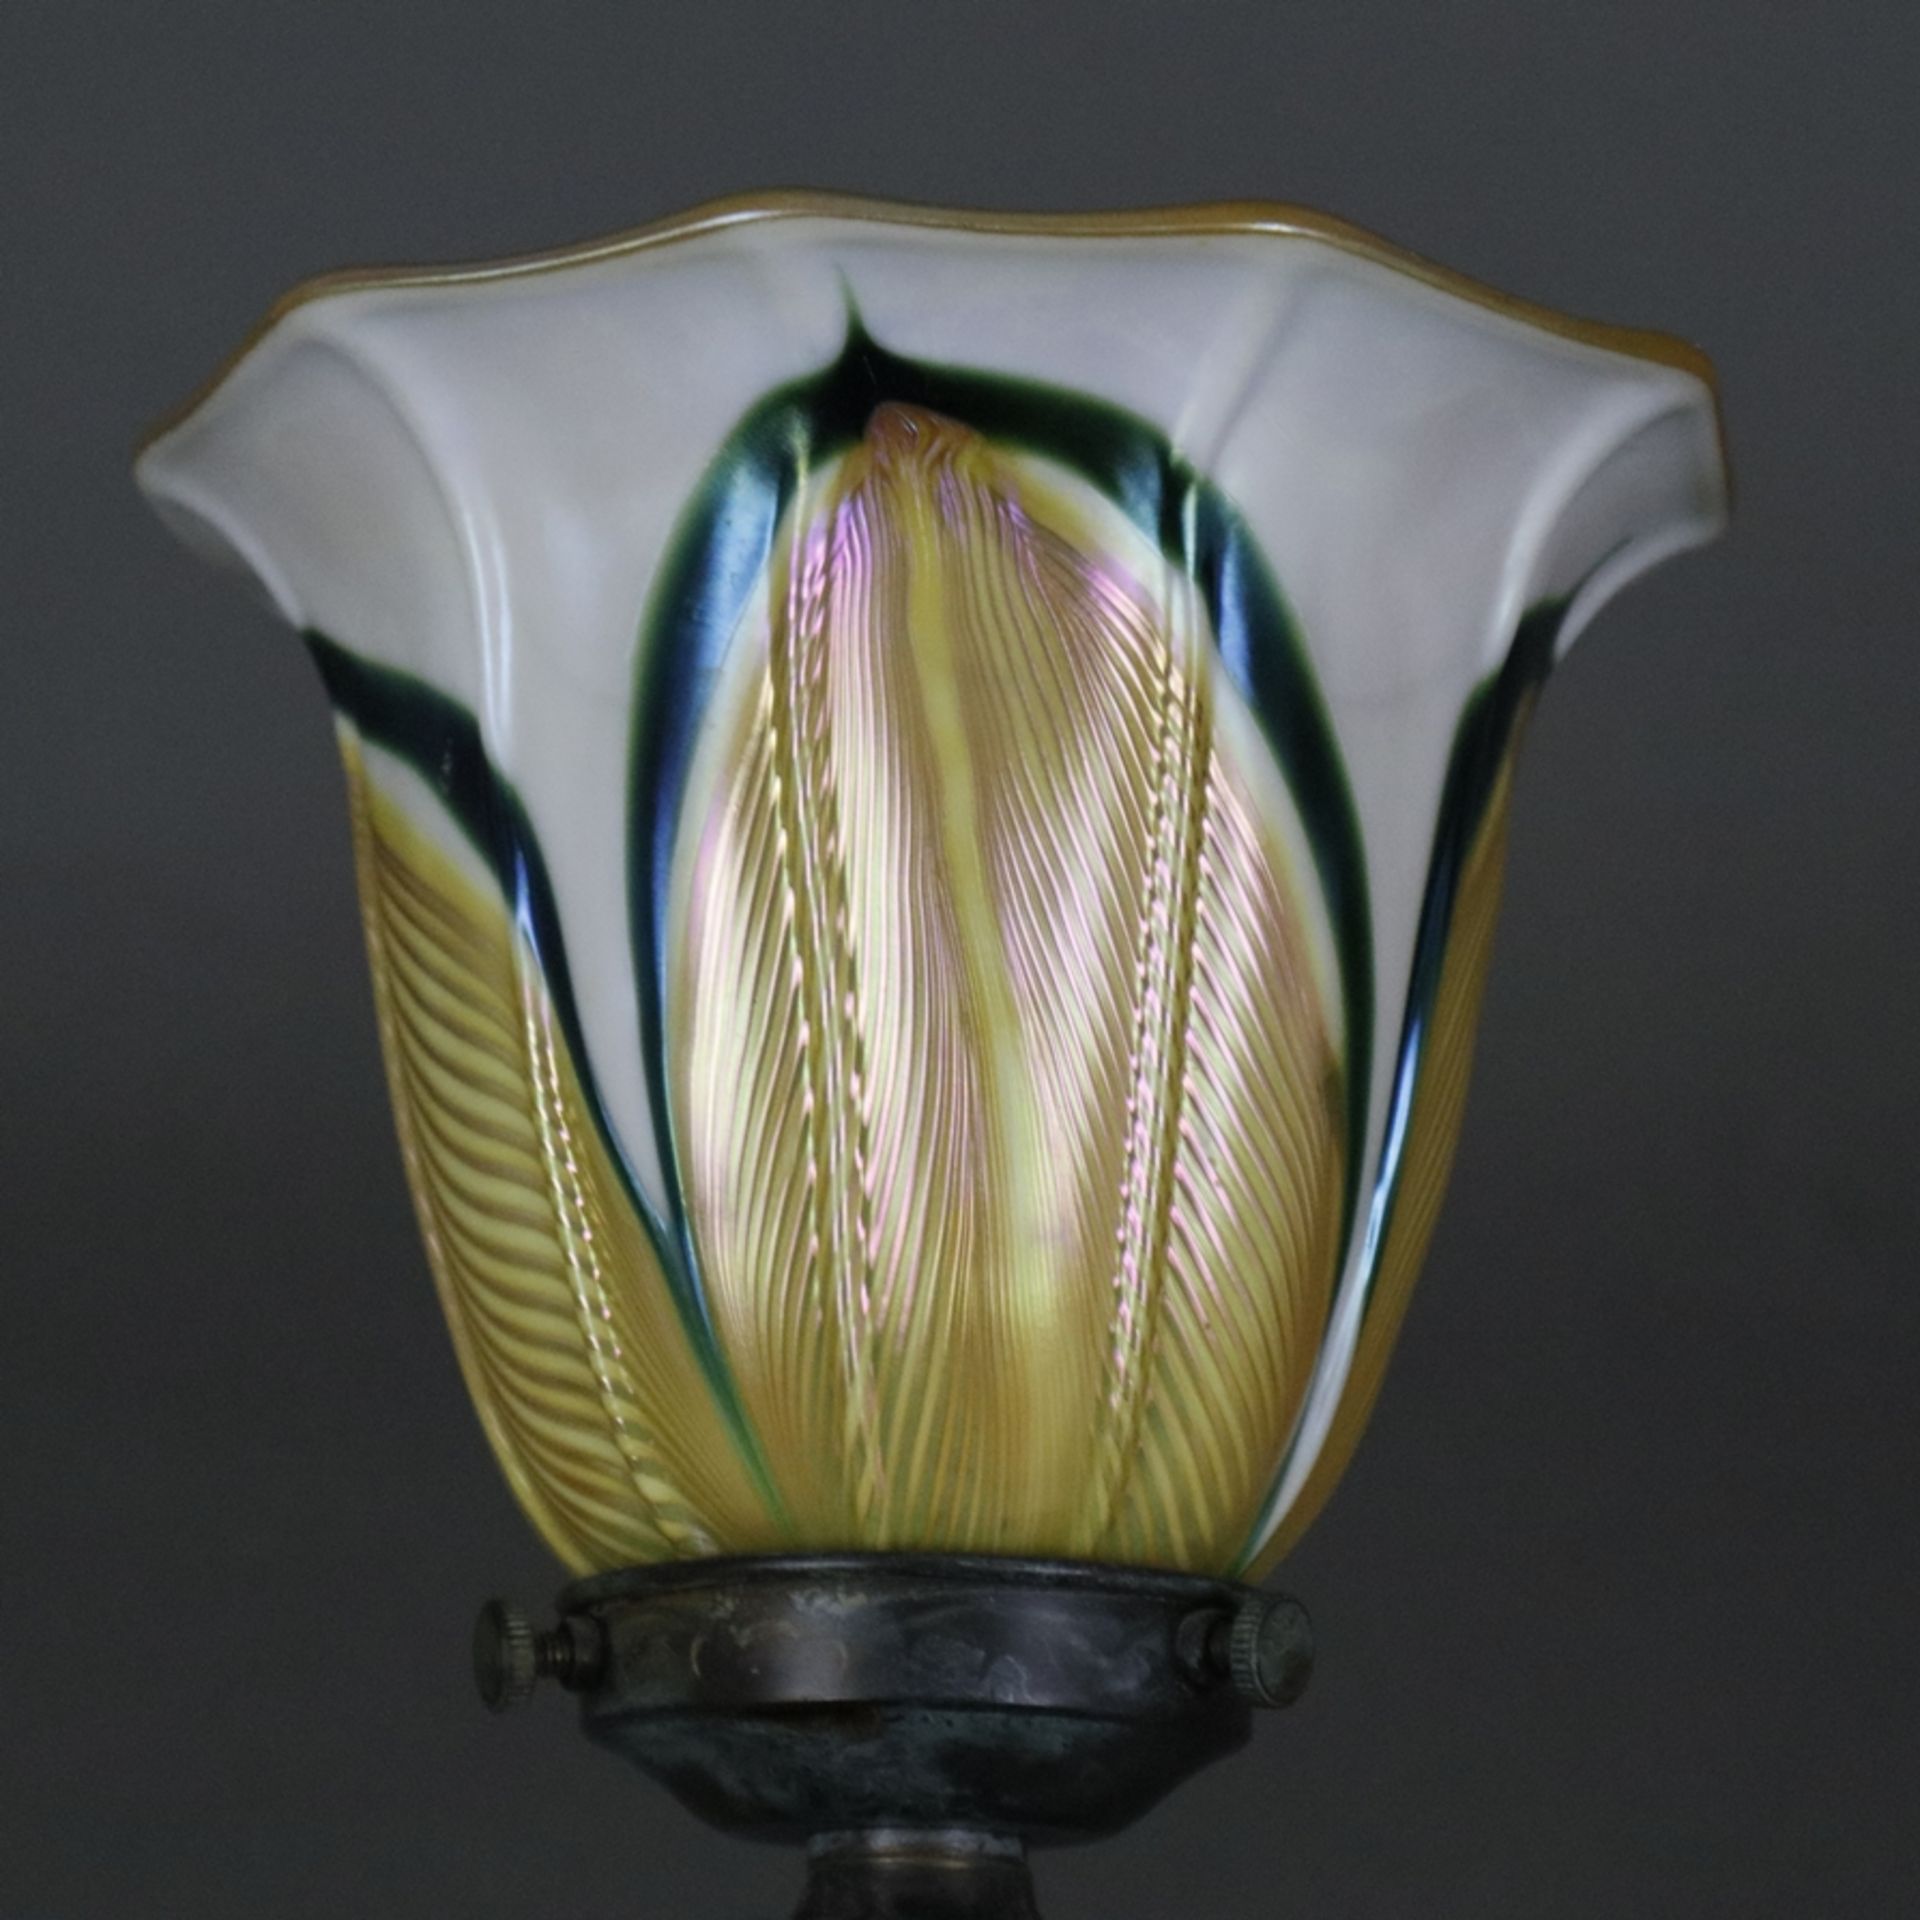 Jugendstil Tischlampe - um 1900/10, floral reliefierter Metallfuß, bronziert, glockenförmiger Glass - Bild 6 aus 7